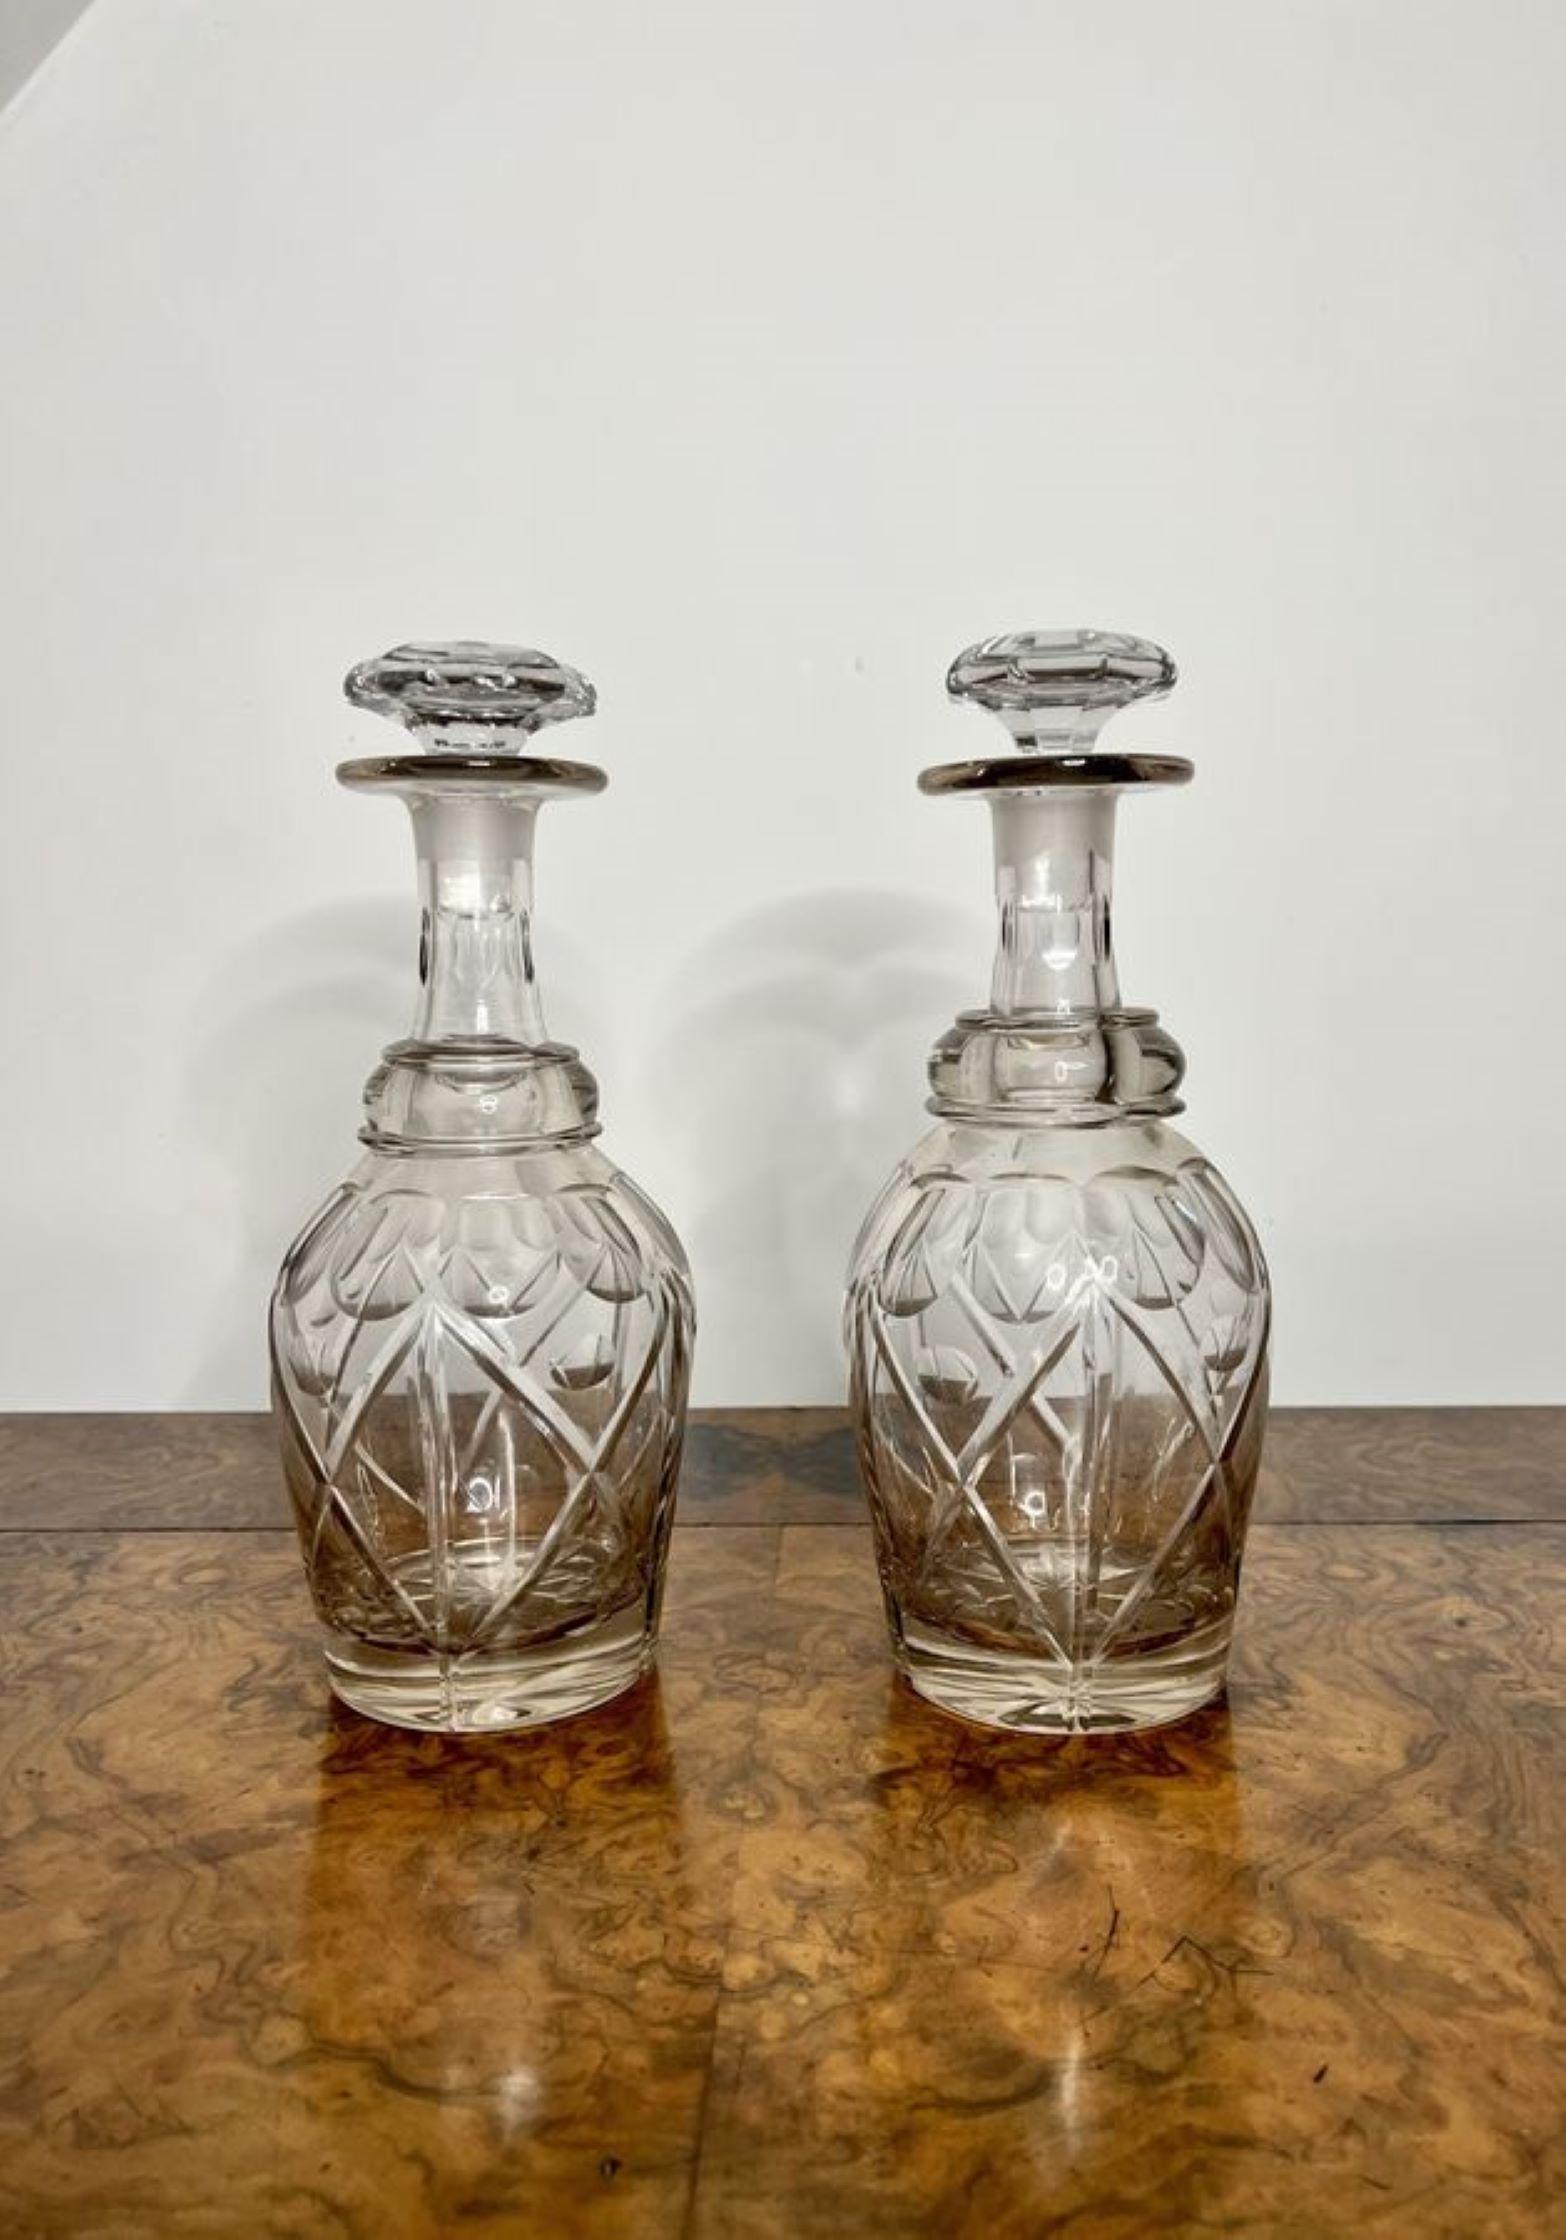 Fantastische Qualität Paar antike viktorianische Karaffen mit einem fantastischen Paar von Qualität geschliffenem Glas Karaffen mit den ursprünglichen geschliffenem Glas Stopfen.

D. 1880